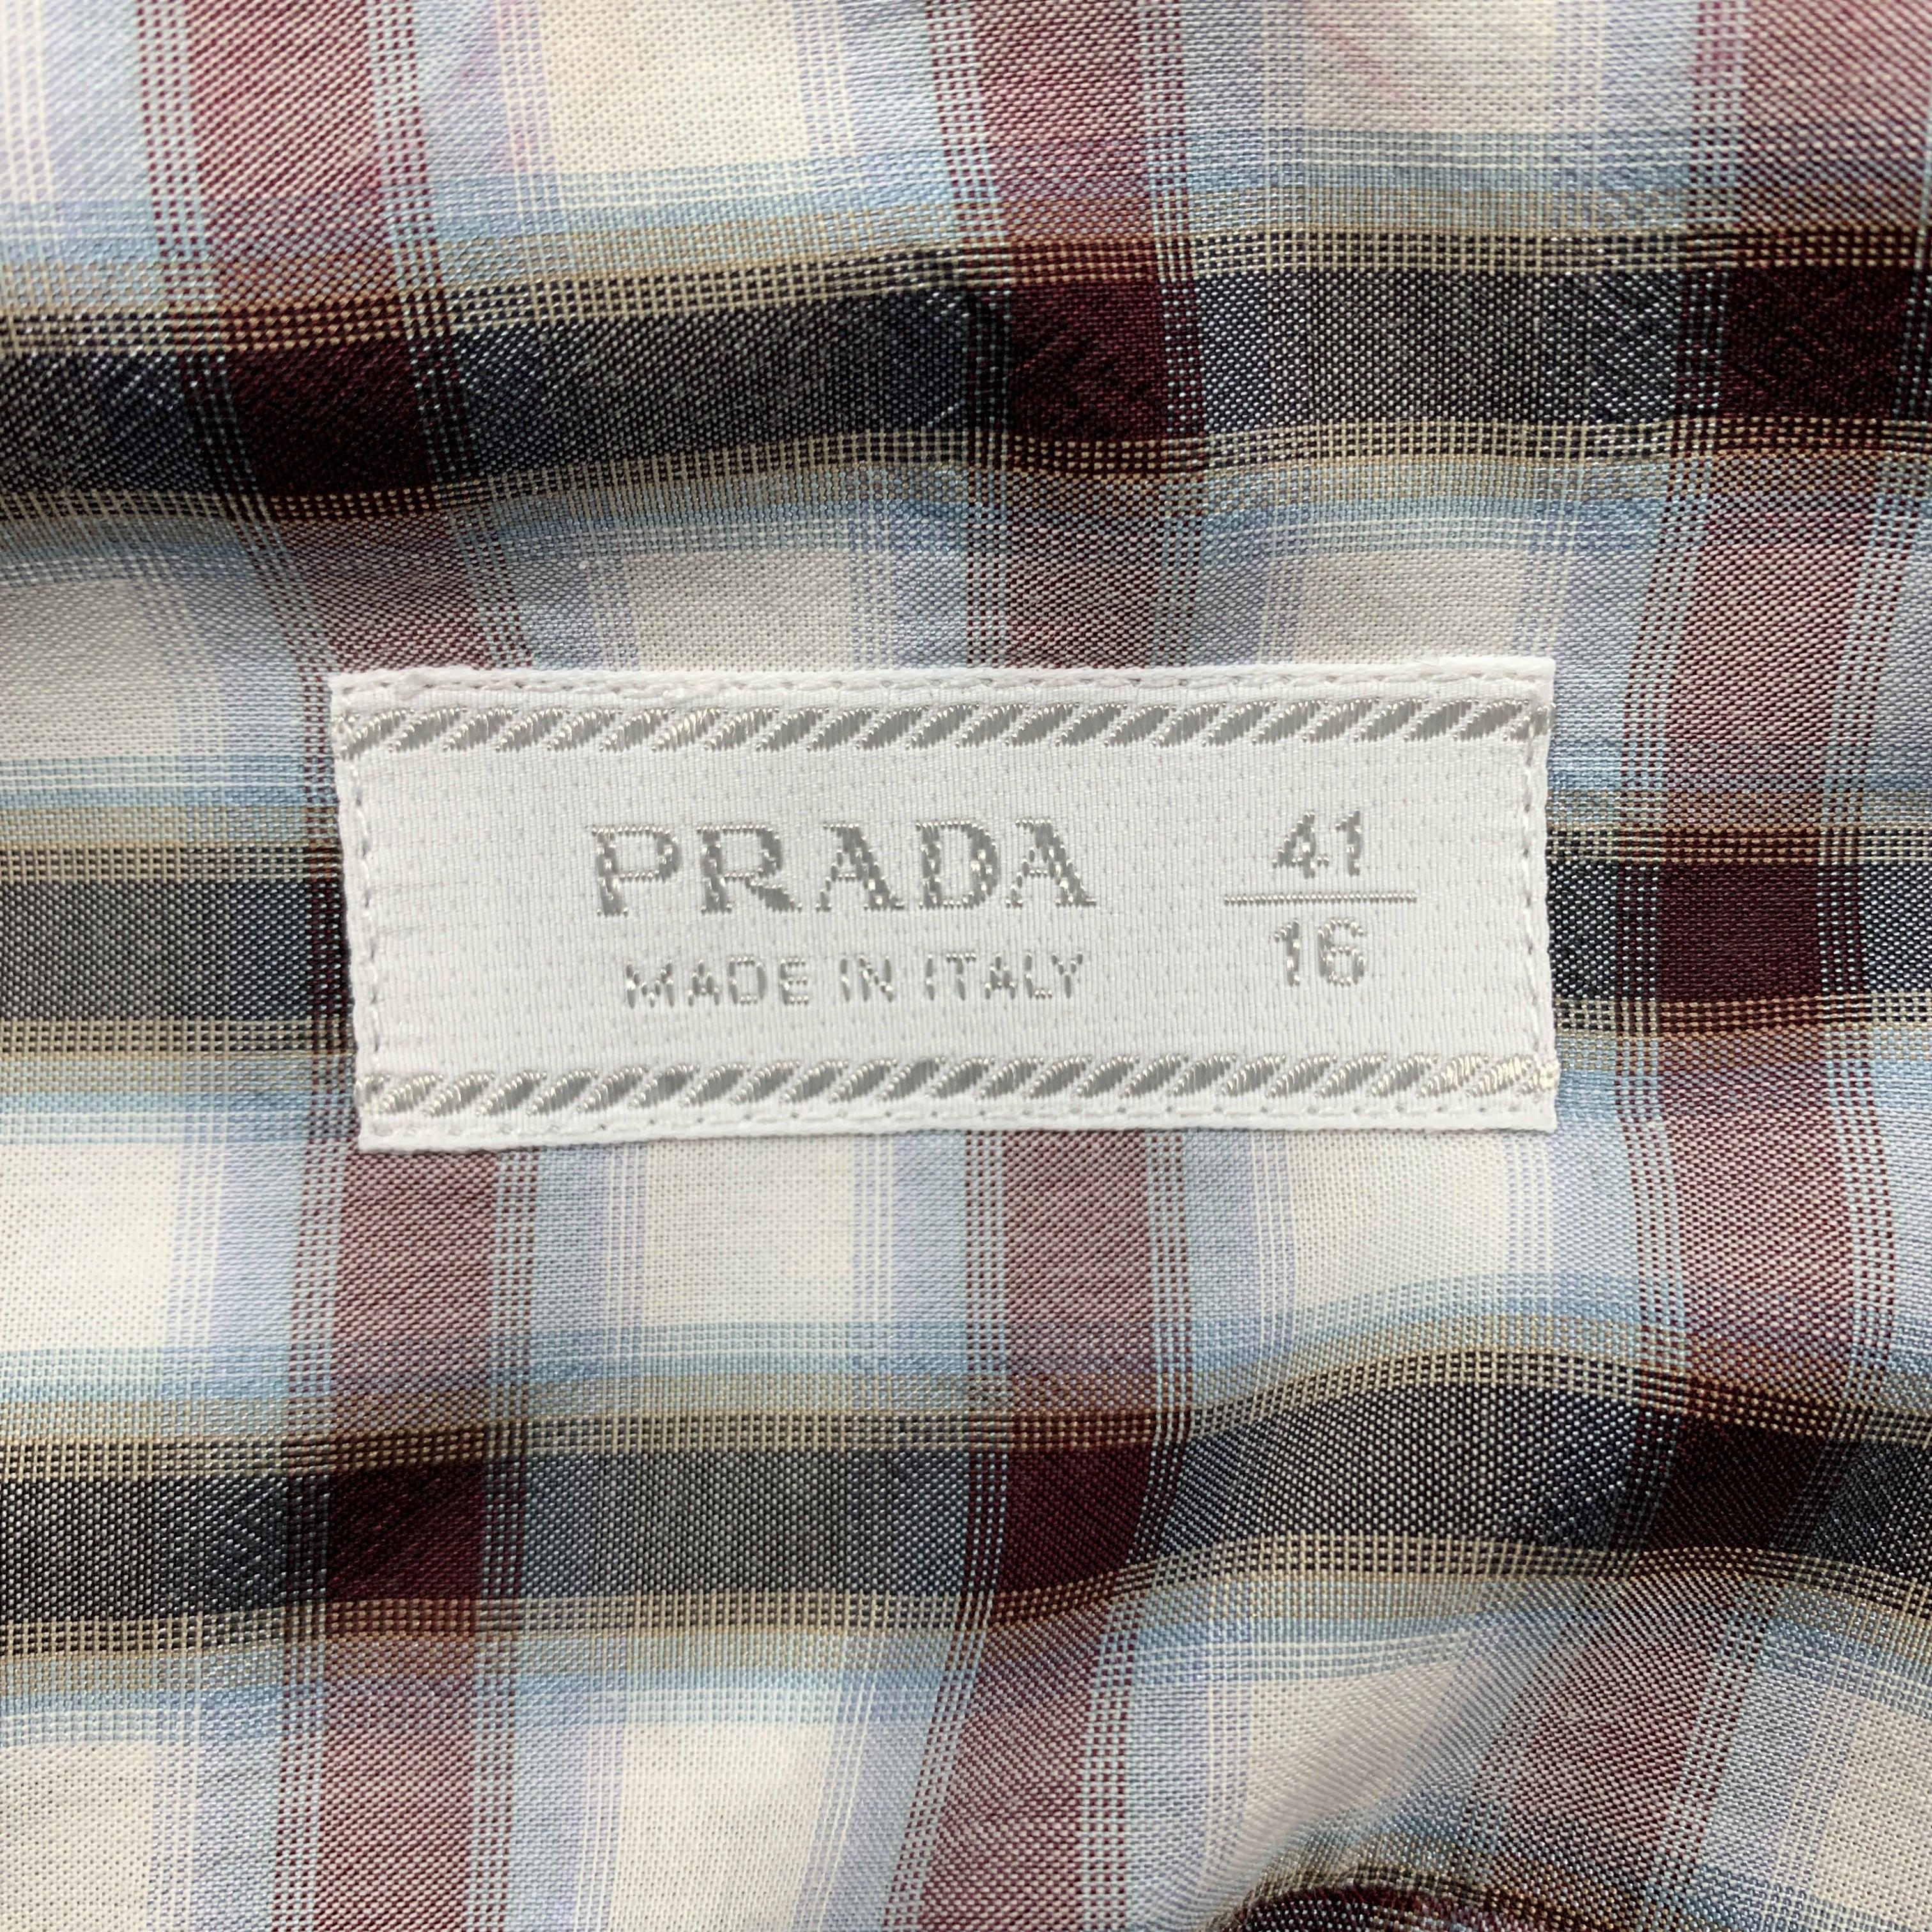 PRADA Size M Multi-Color Plaid Cotton Button Up Long Sleeve Shirt 1